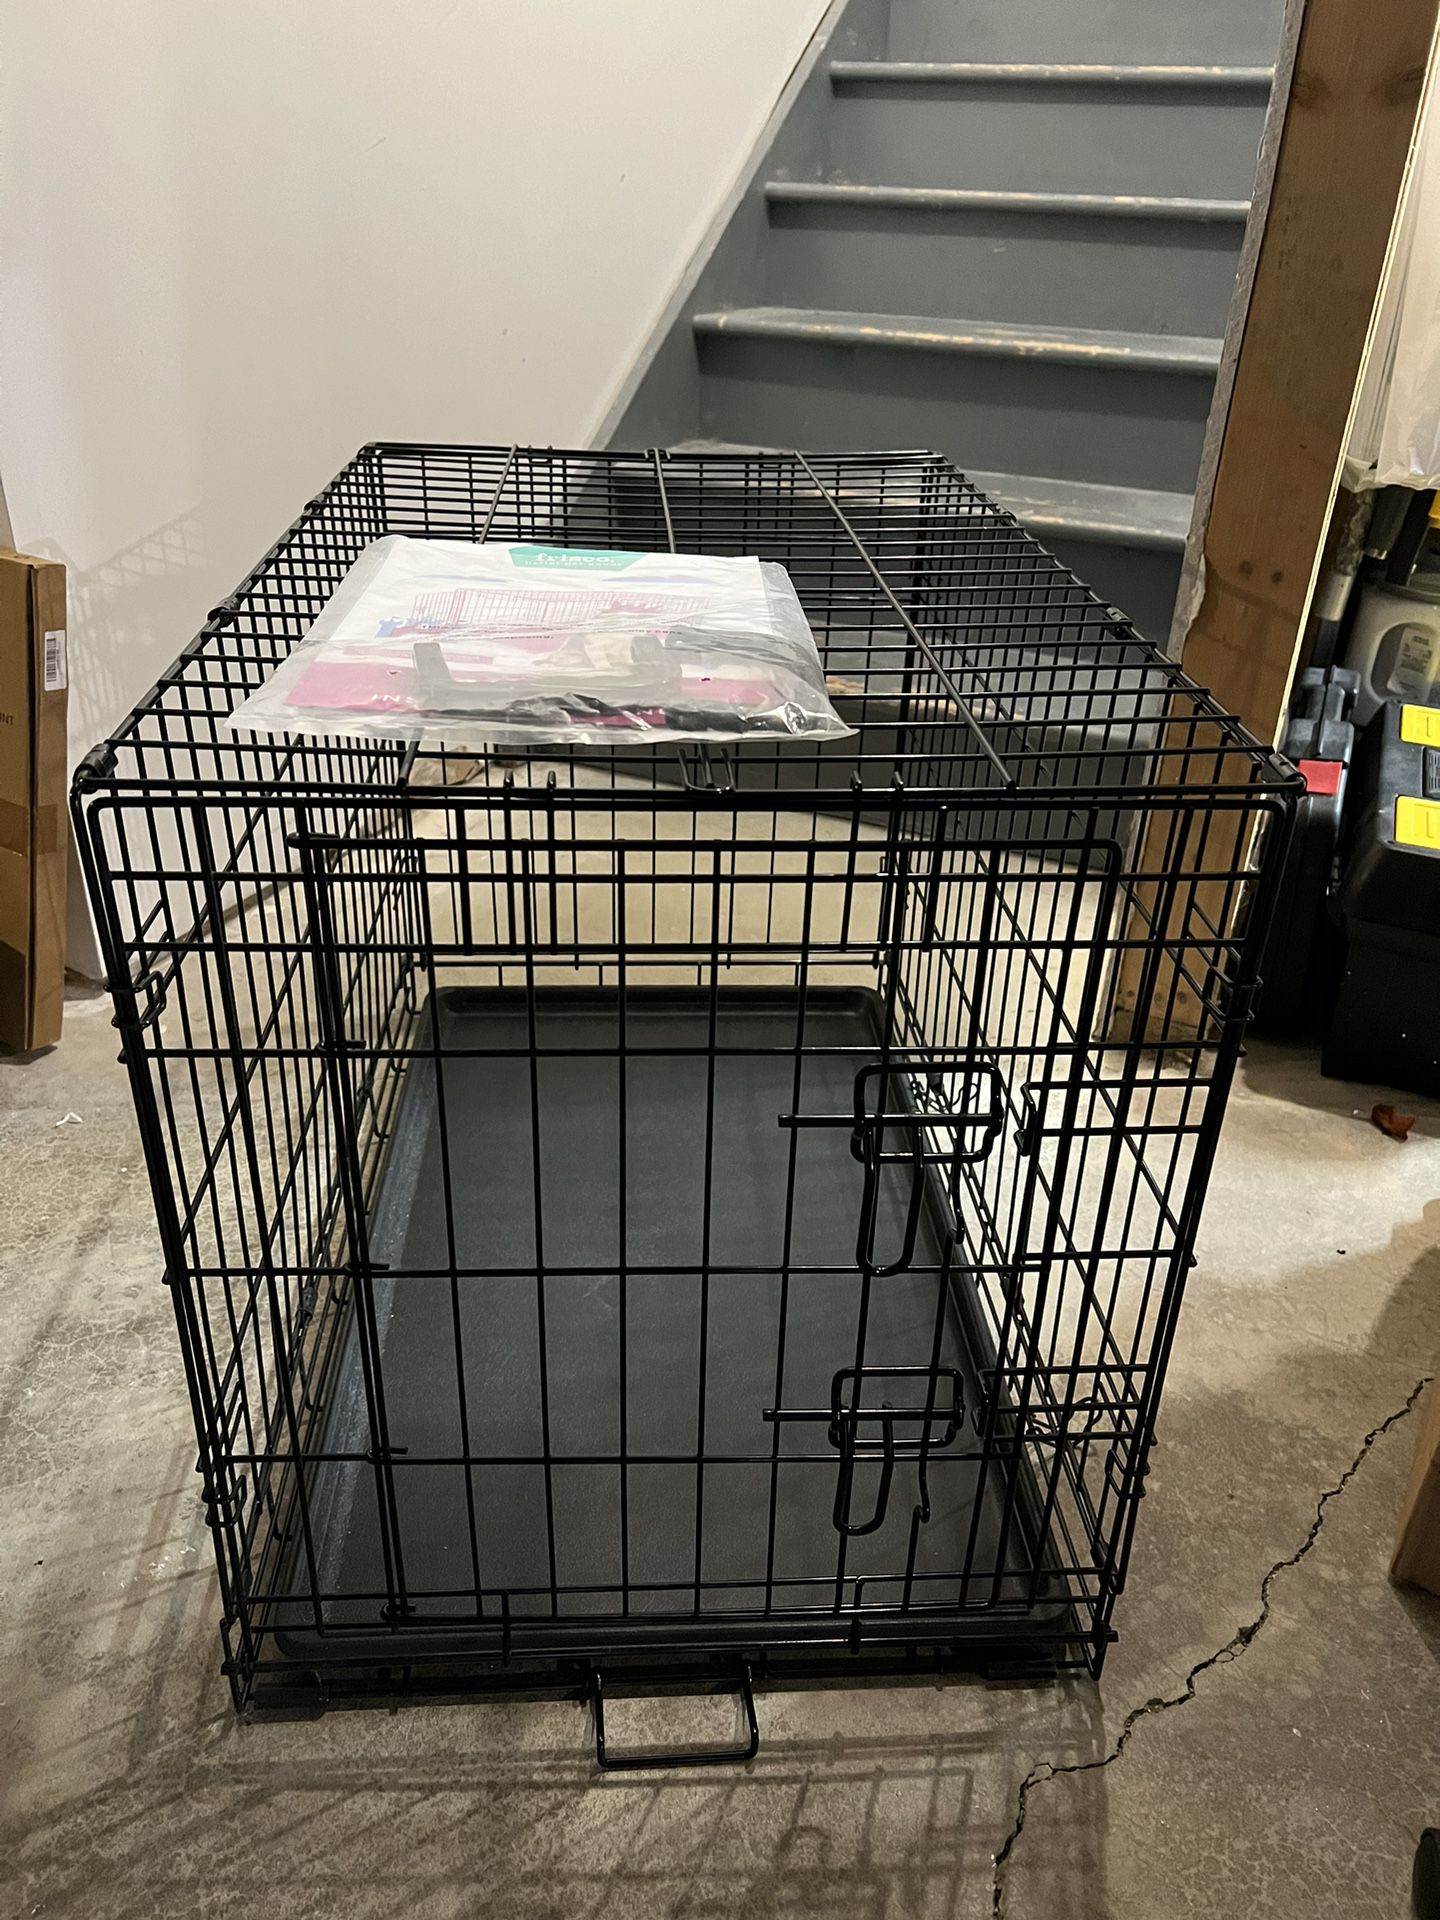 Medium Dog Crate